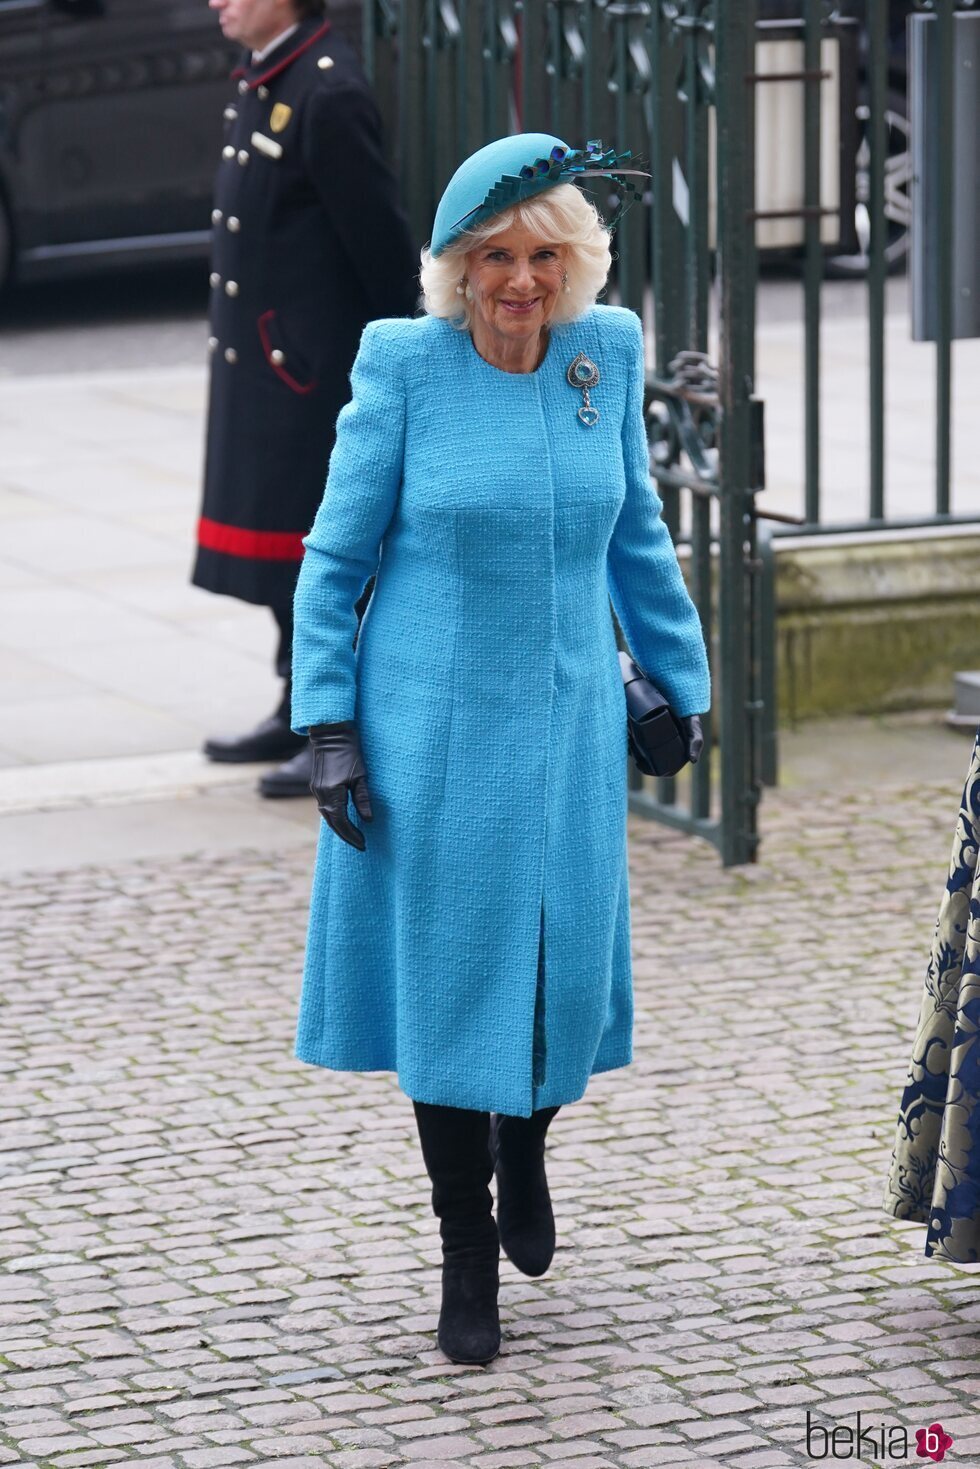 La Reina Camilla en el Día de la Commonwealth 2024